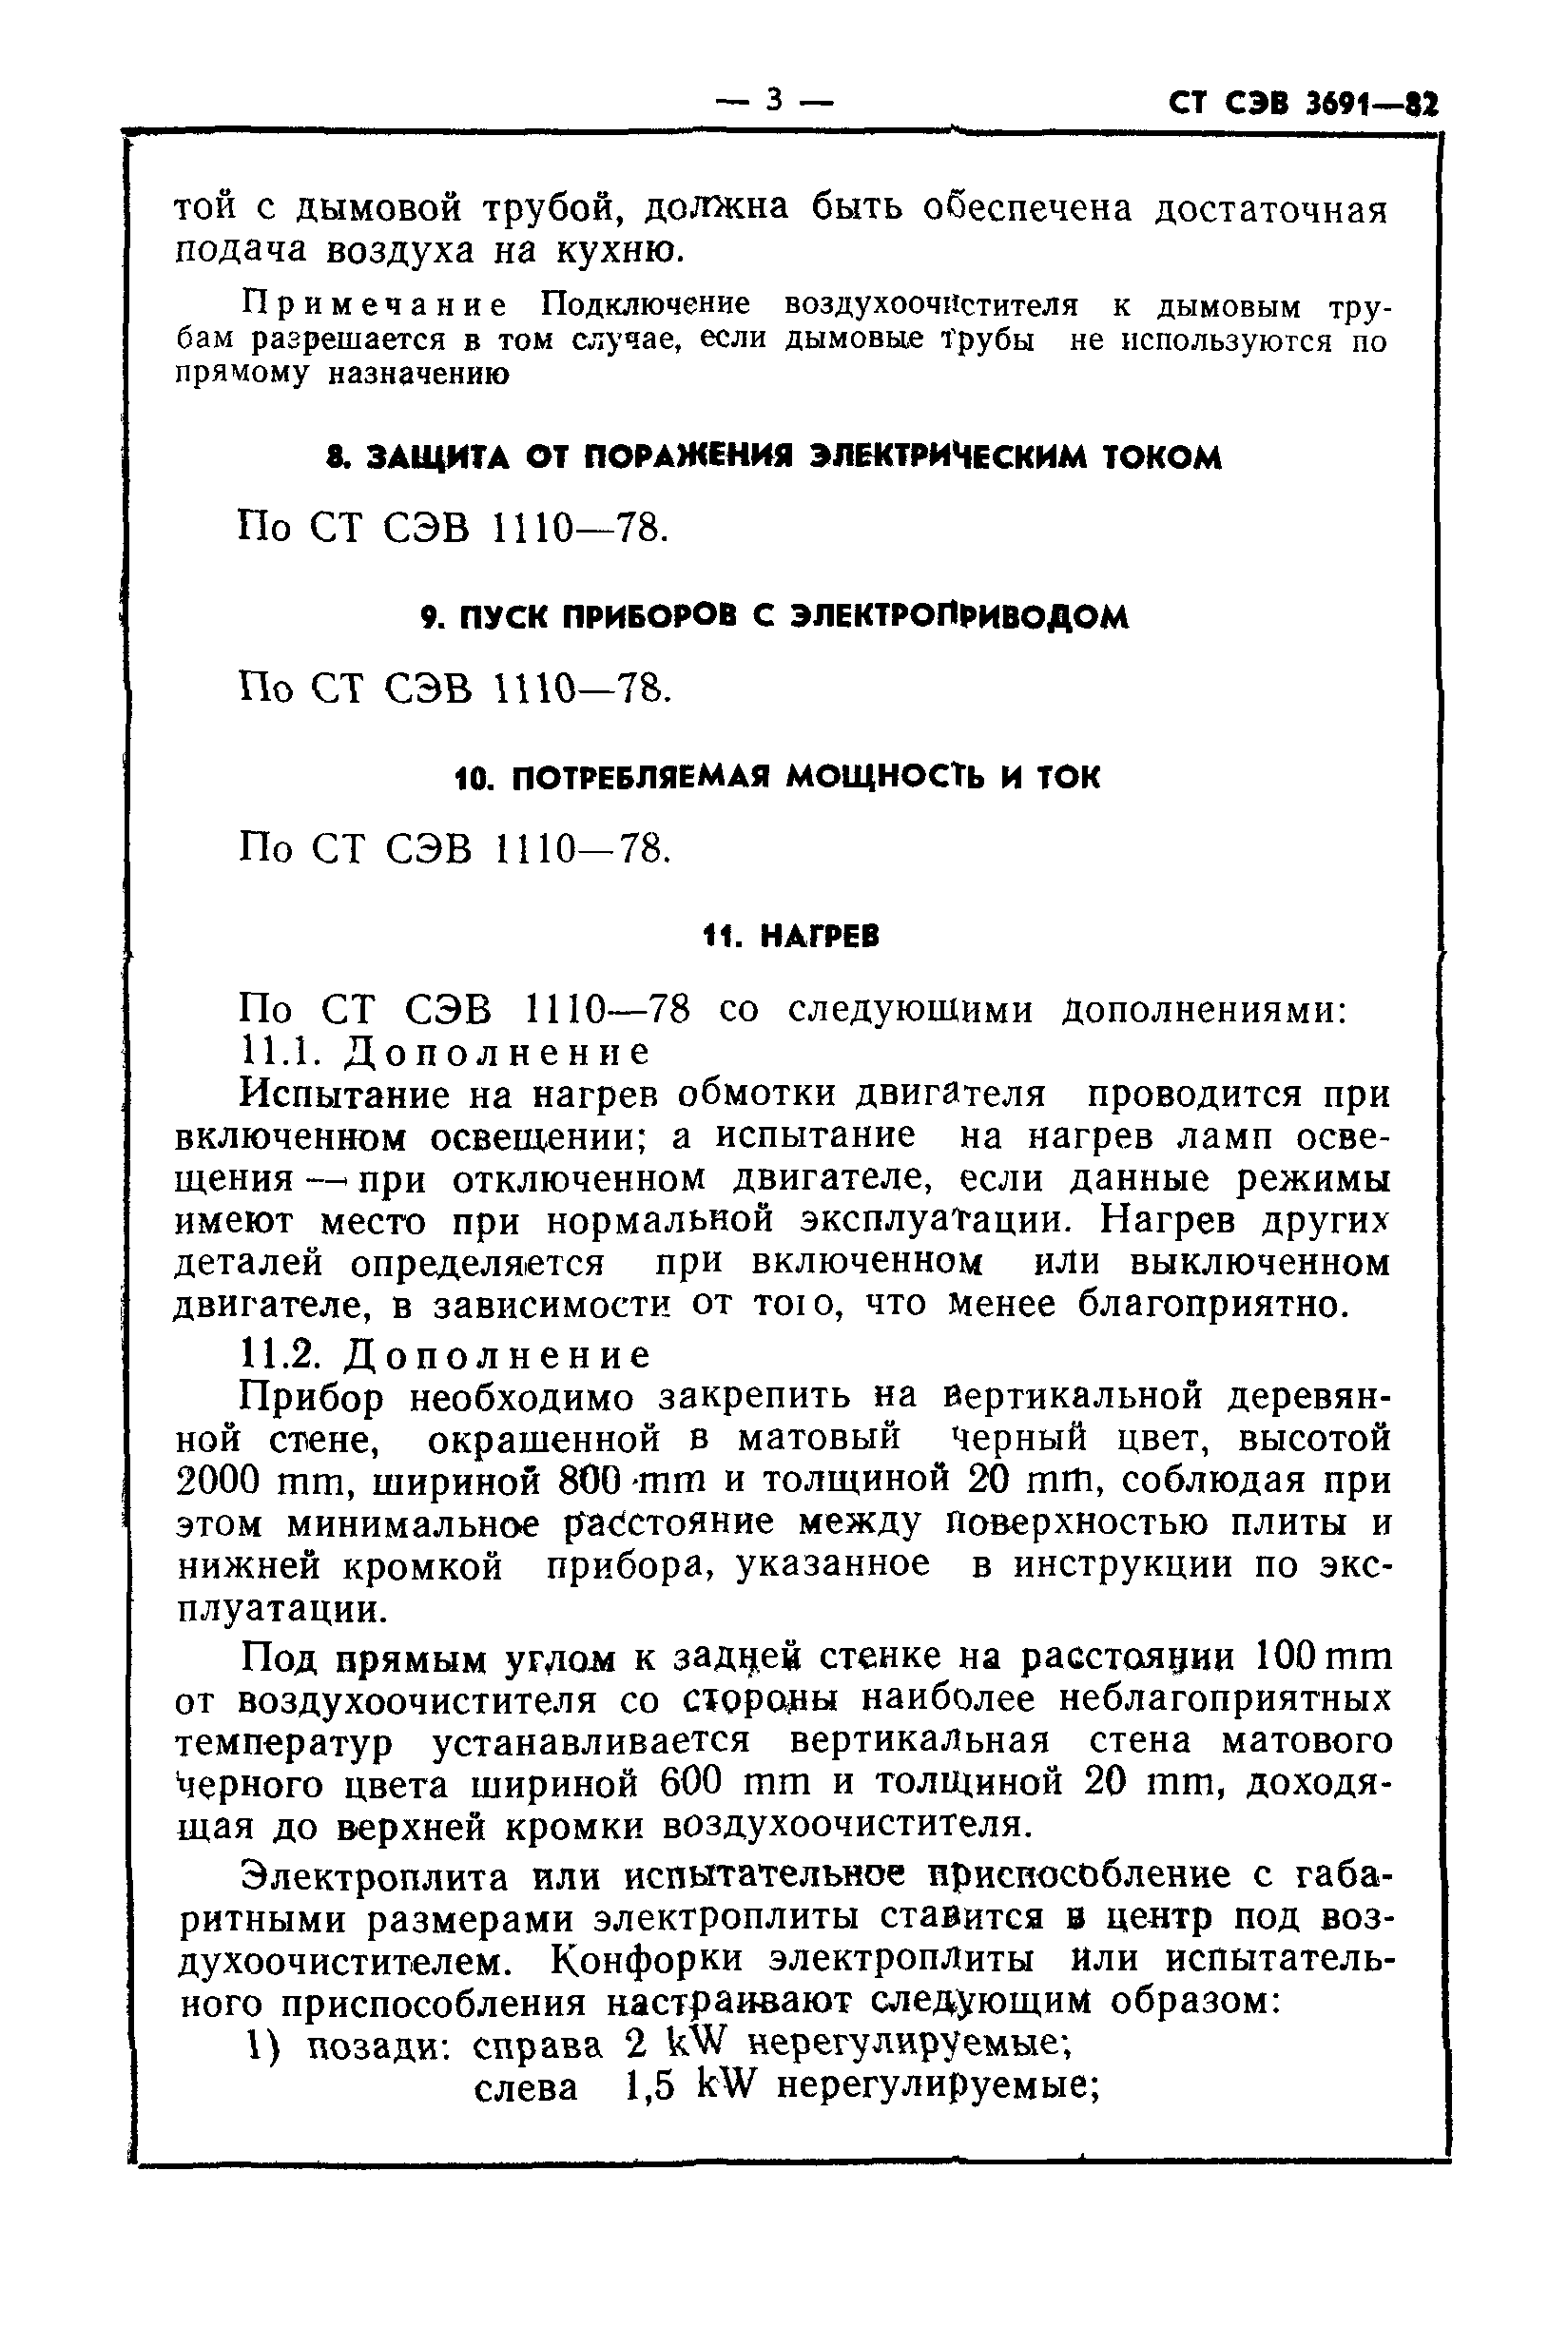 СТ СЭВ 3691-82